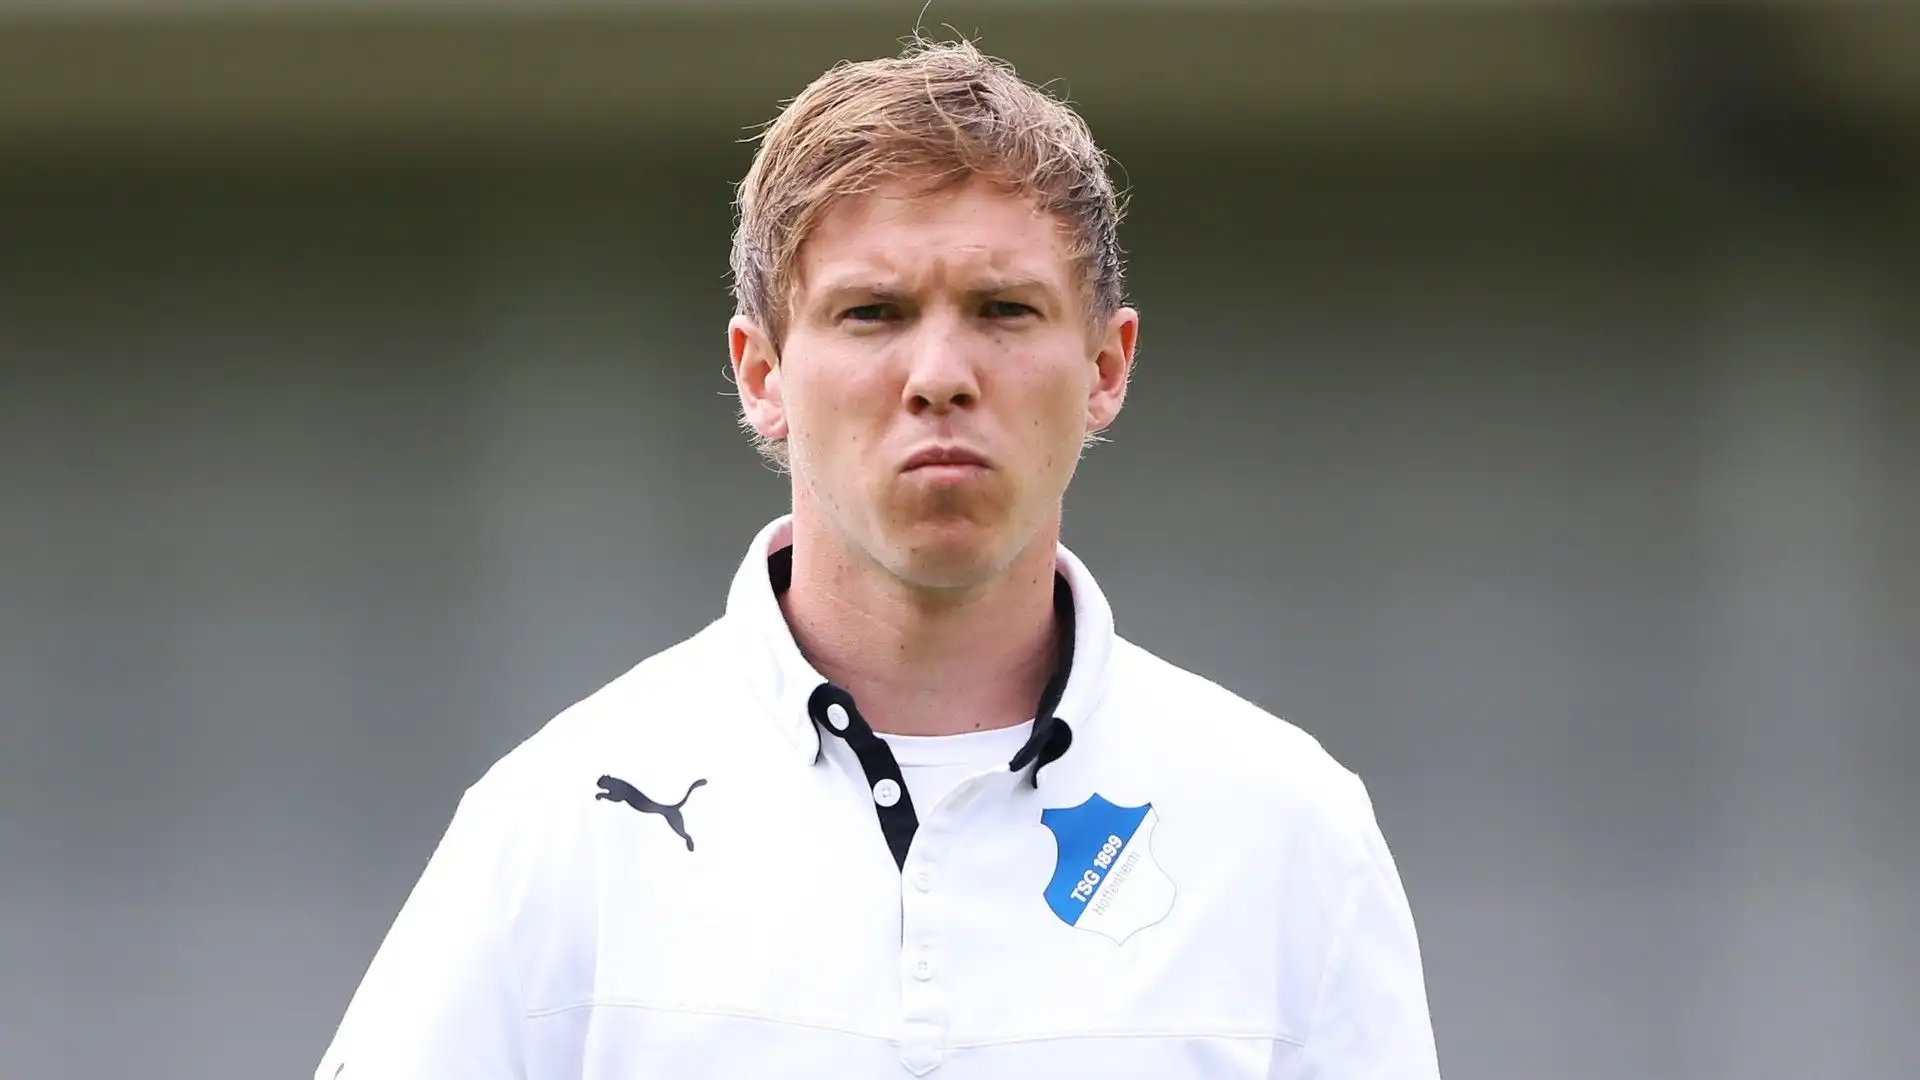 Nel 2010 Nagelsmann ha iniziato ad allenare nelle giovanili dell'Hoffenheim